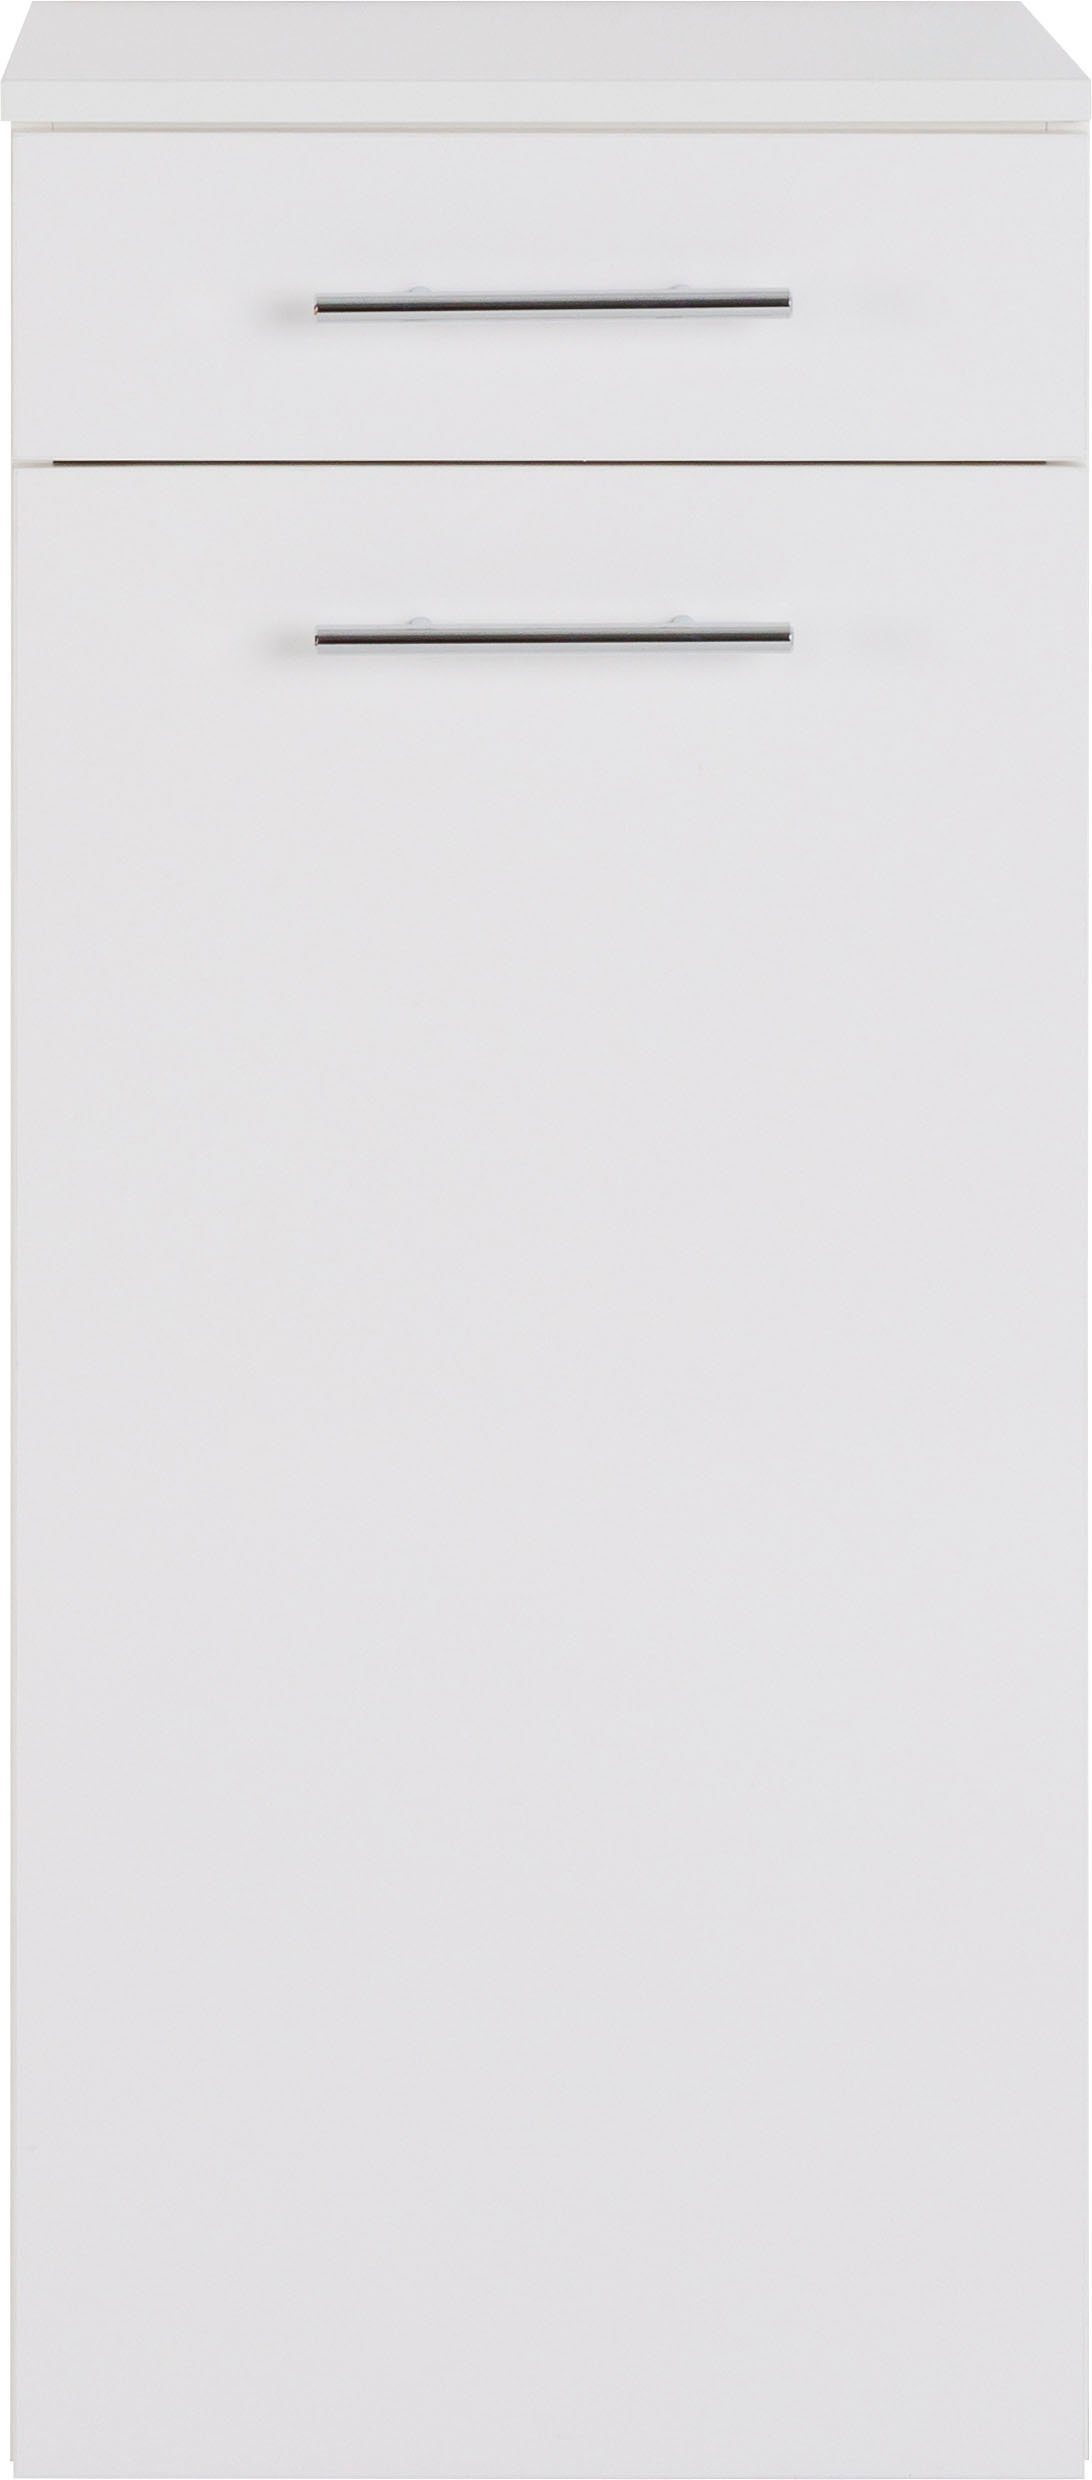 MARLIN Midischrank 3040, weiß | Breite 40 cm weiß